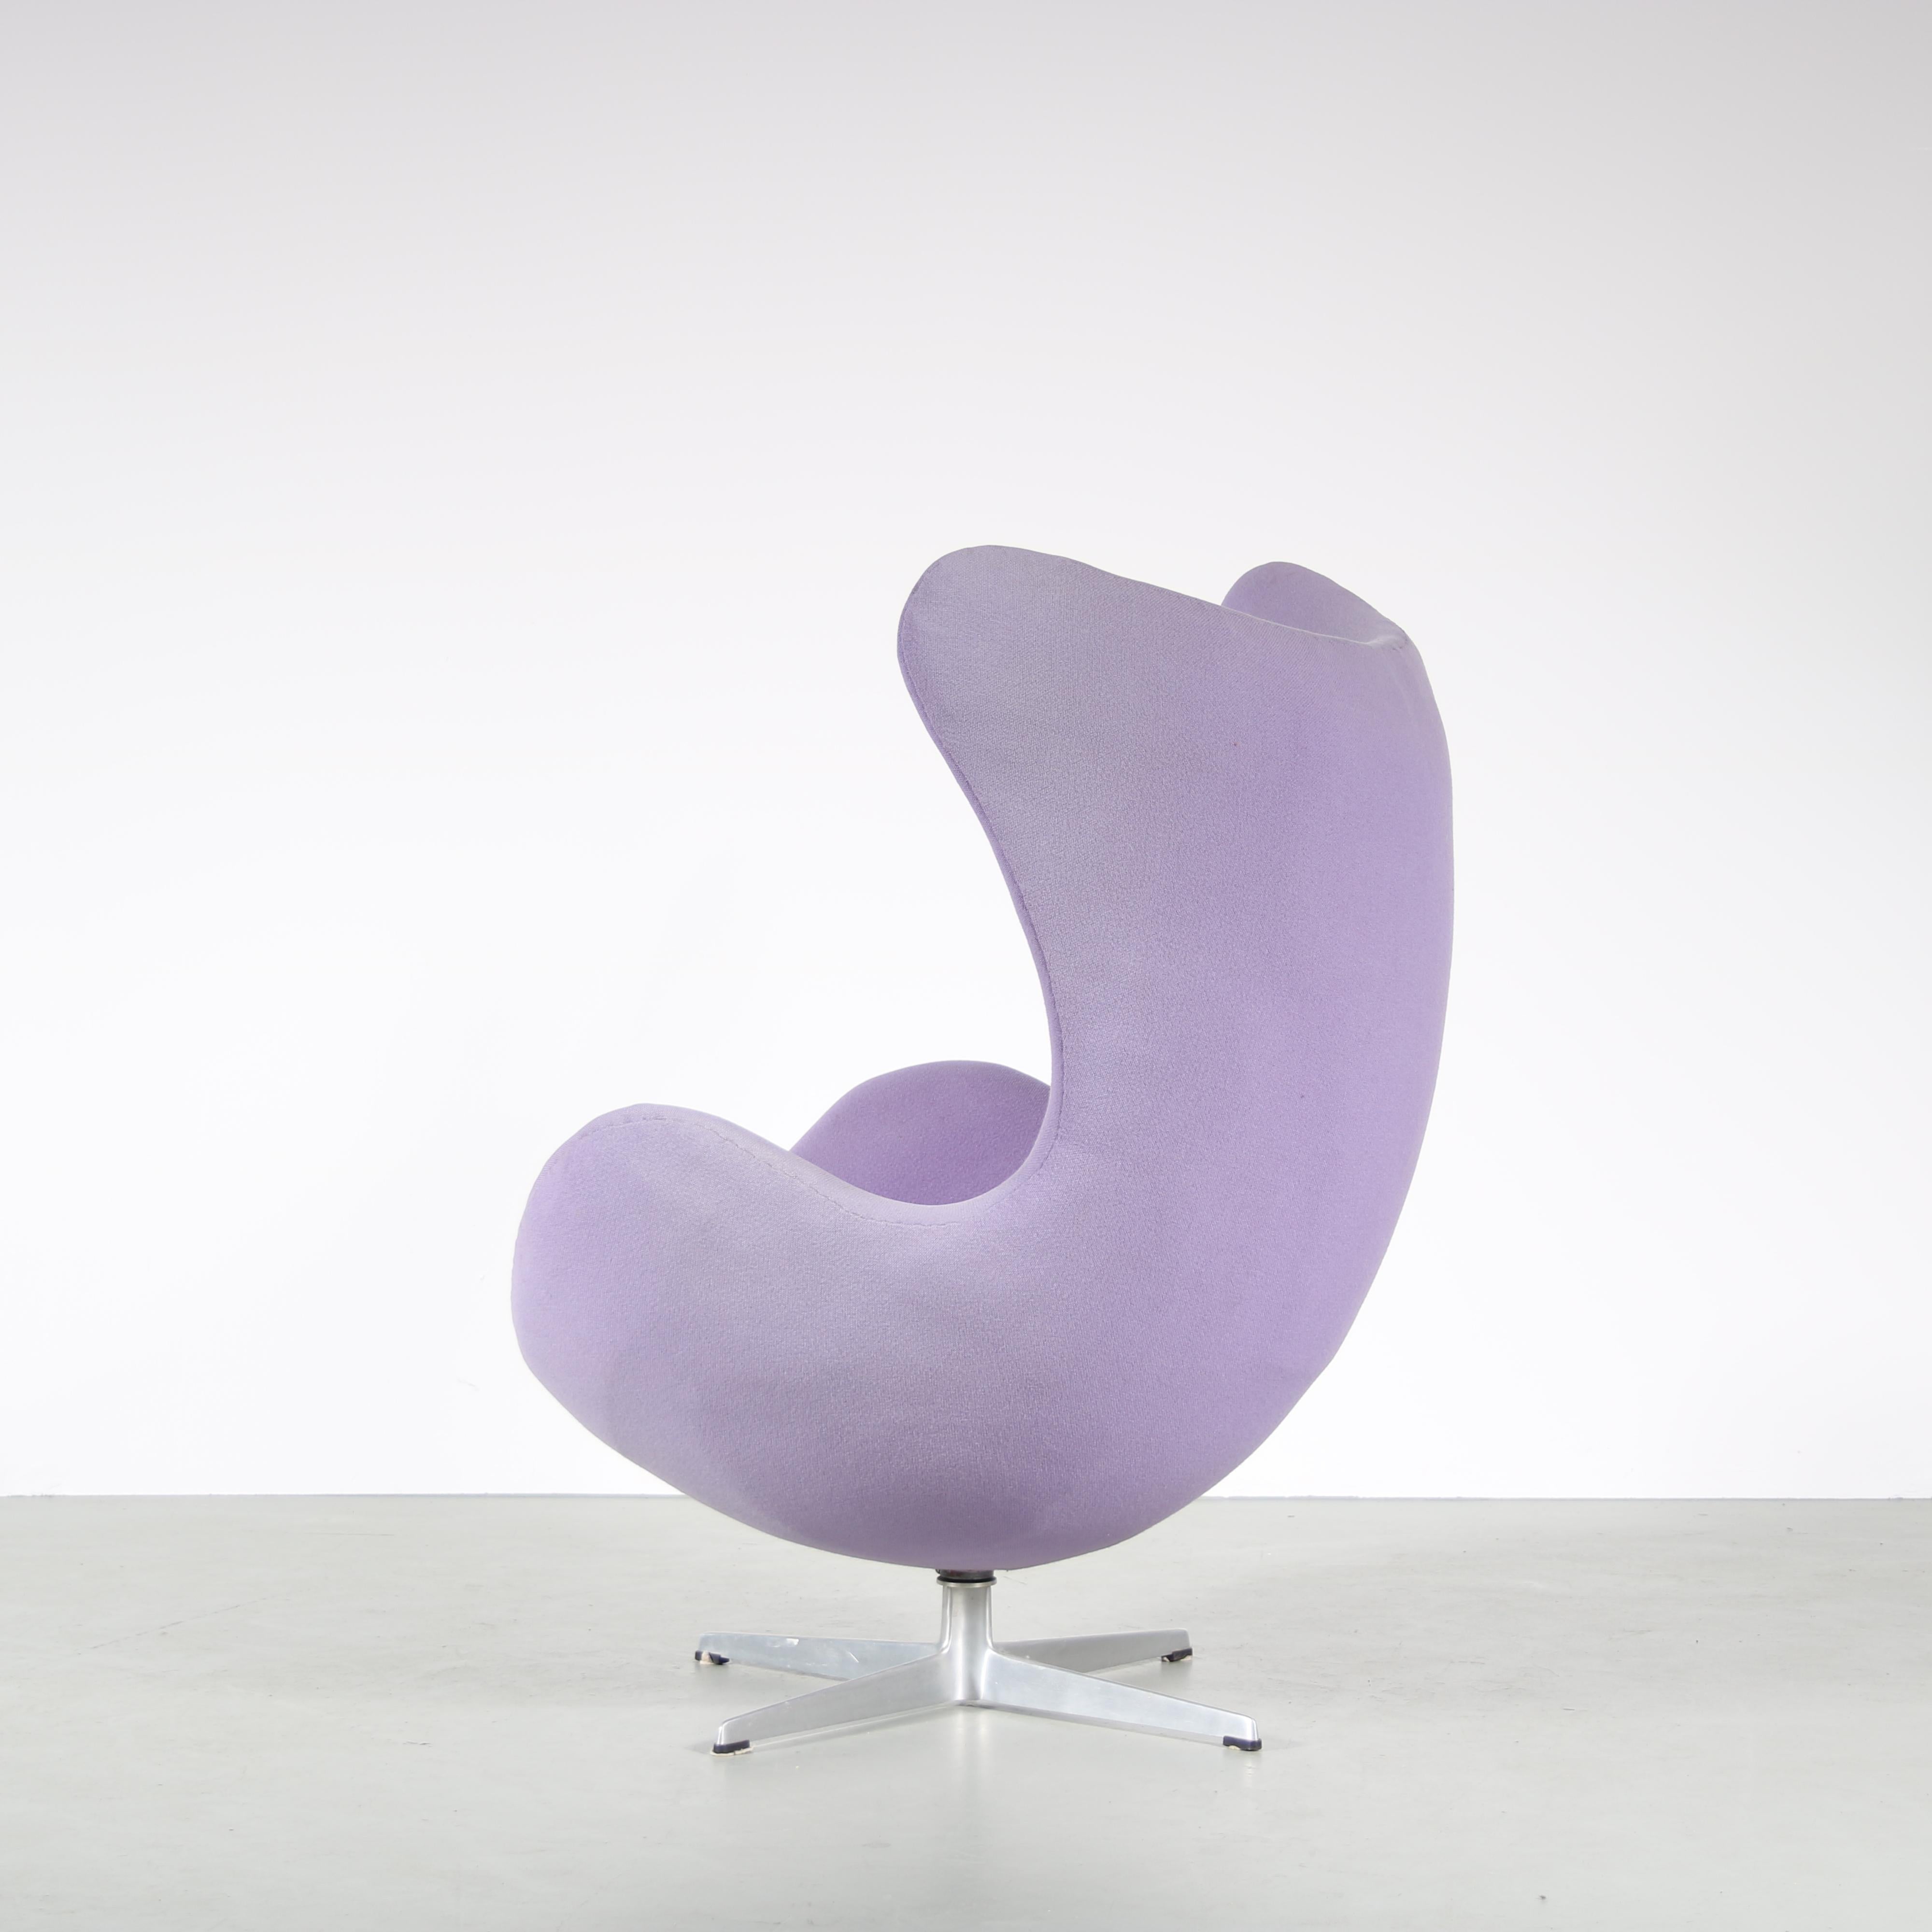 Mid-20th Century “Egg” Chair by Arne Jacobsen for Fritz Hansen, Denmark 1960